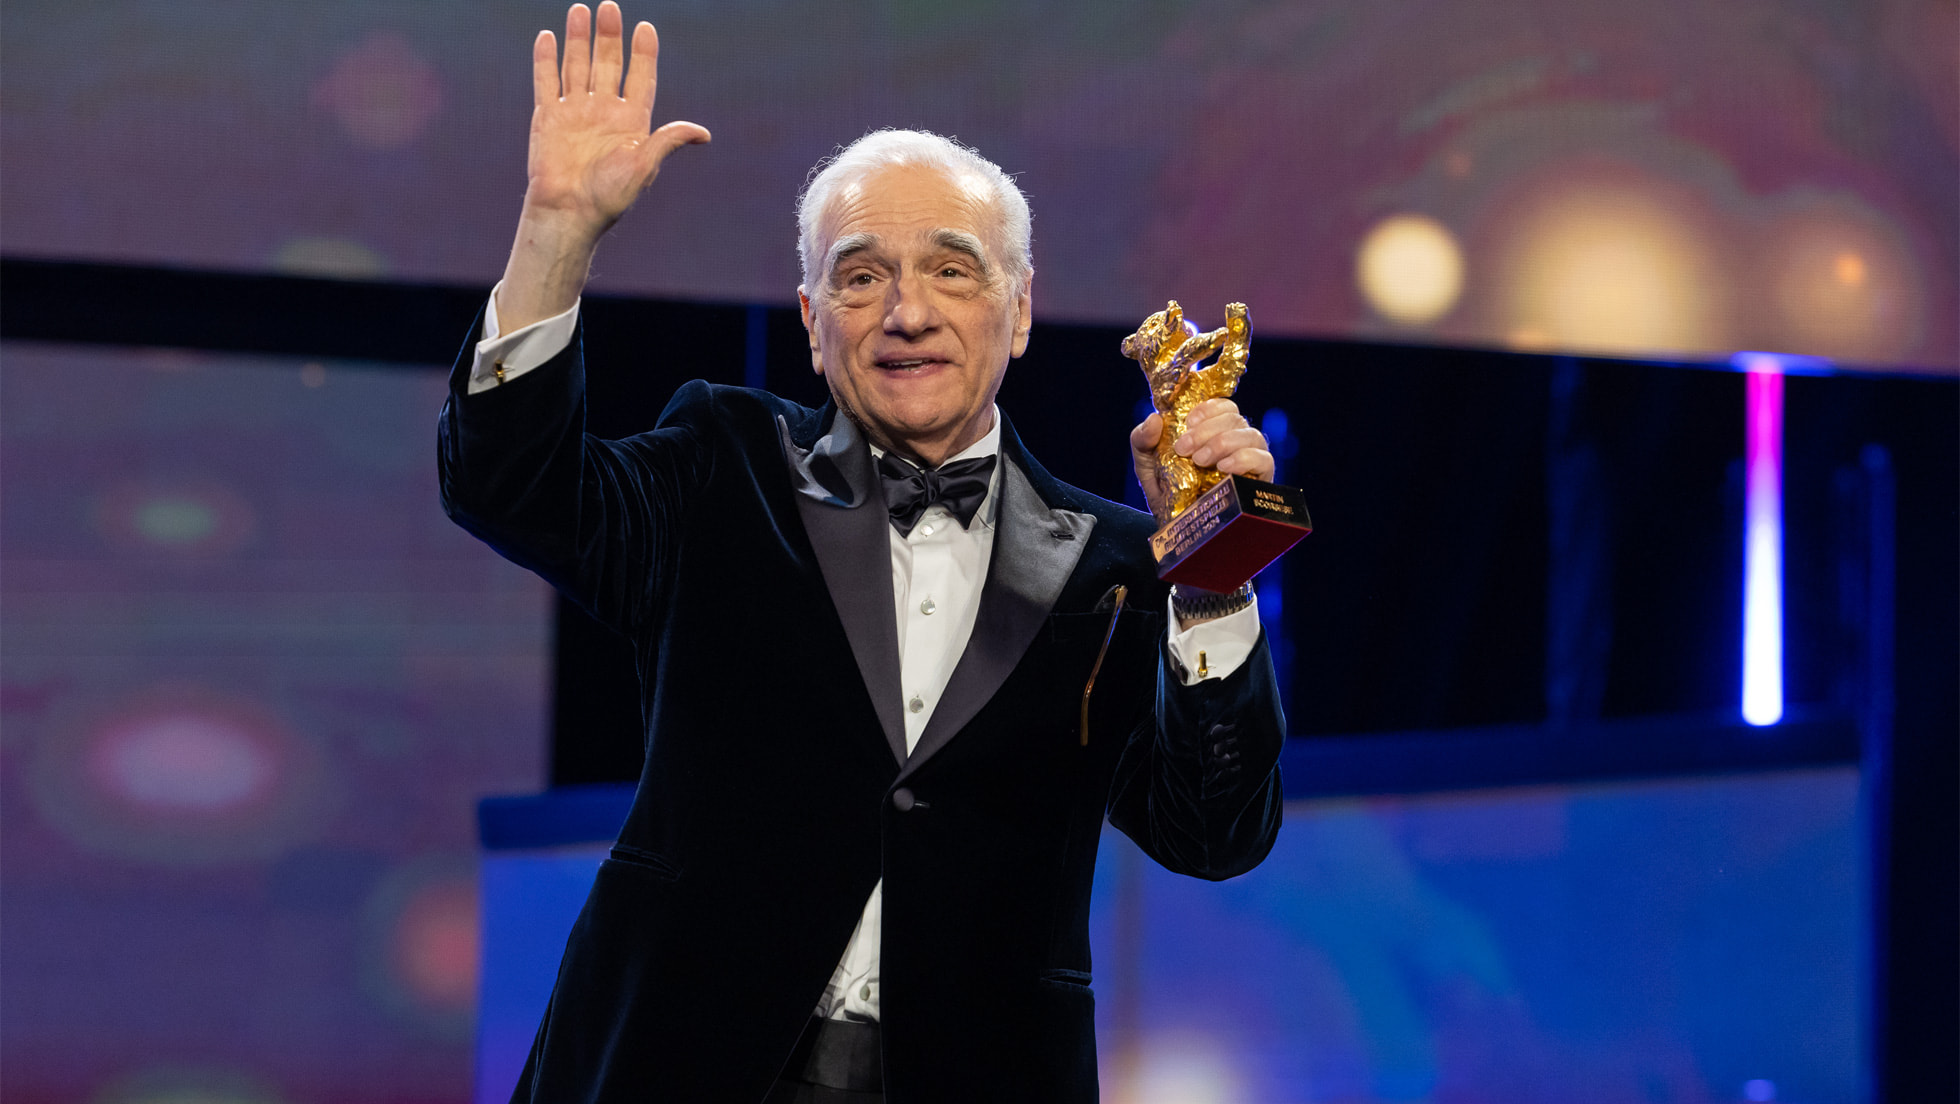 Martin Scorsese awarded prestigious Honorary Golden Bear from Berlin International Film Festival